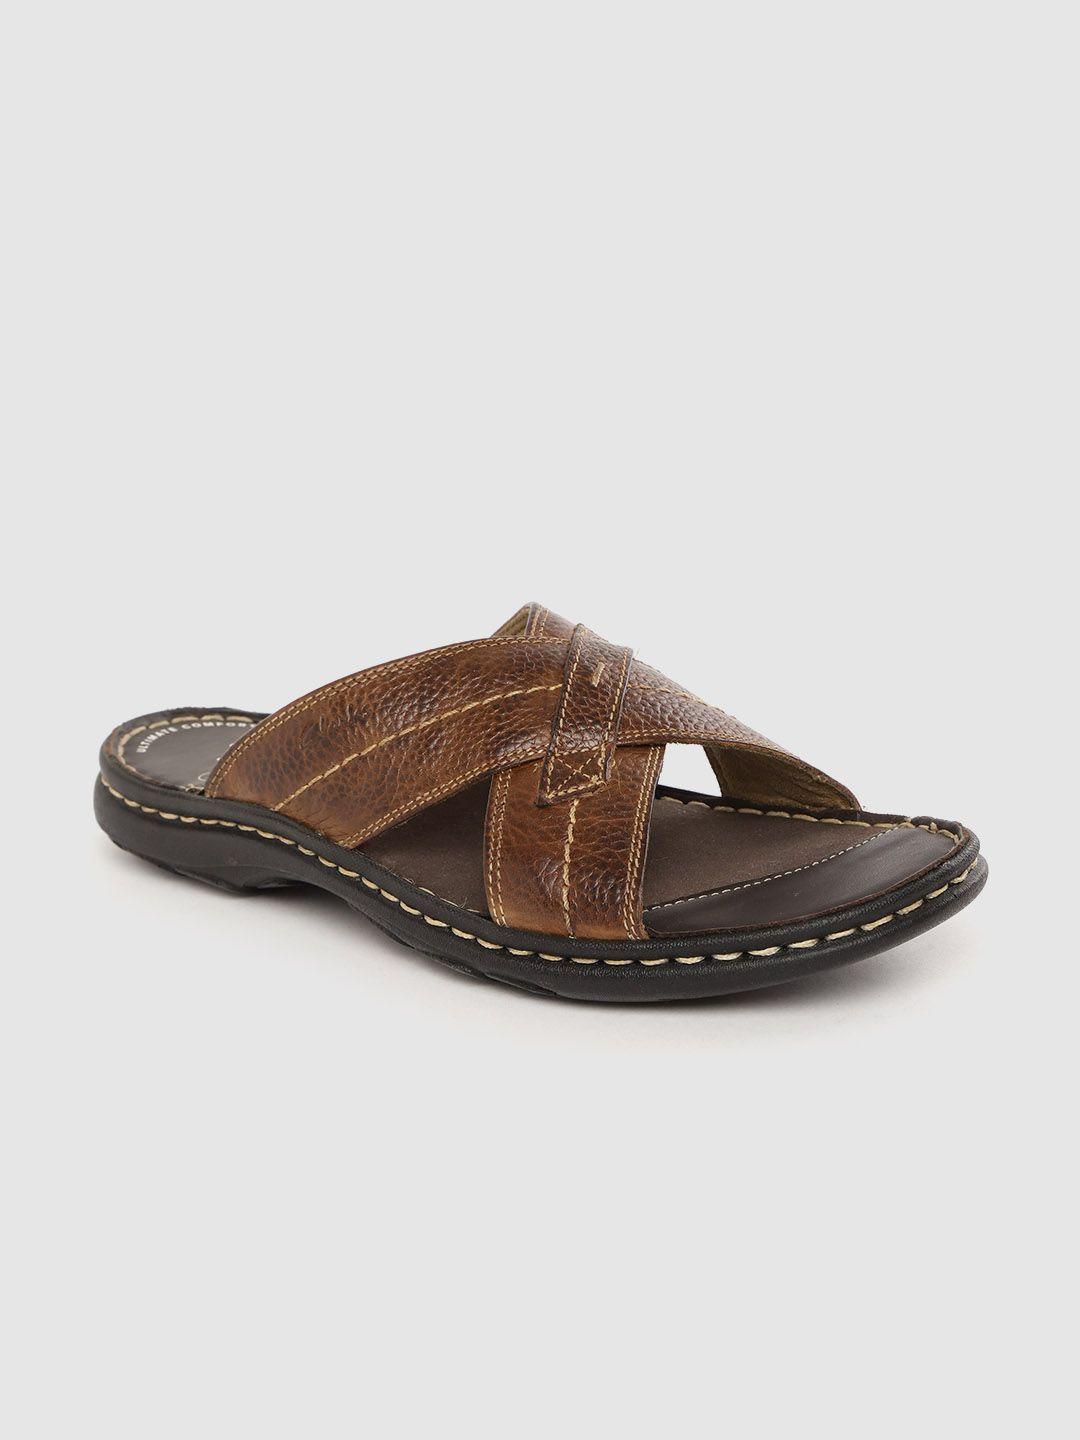 clarks-men-brown-leather-comfort-sandals